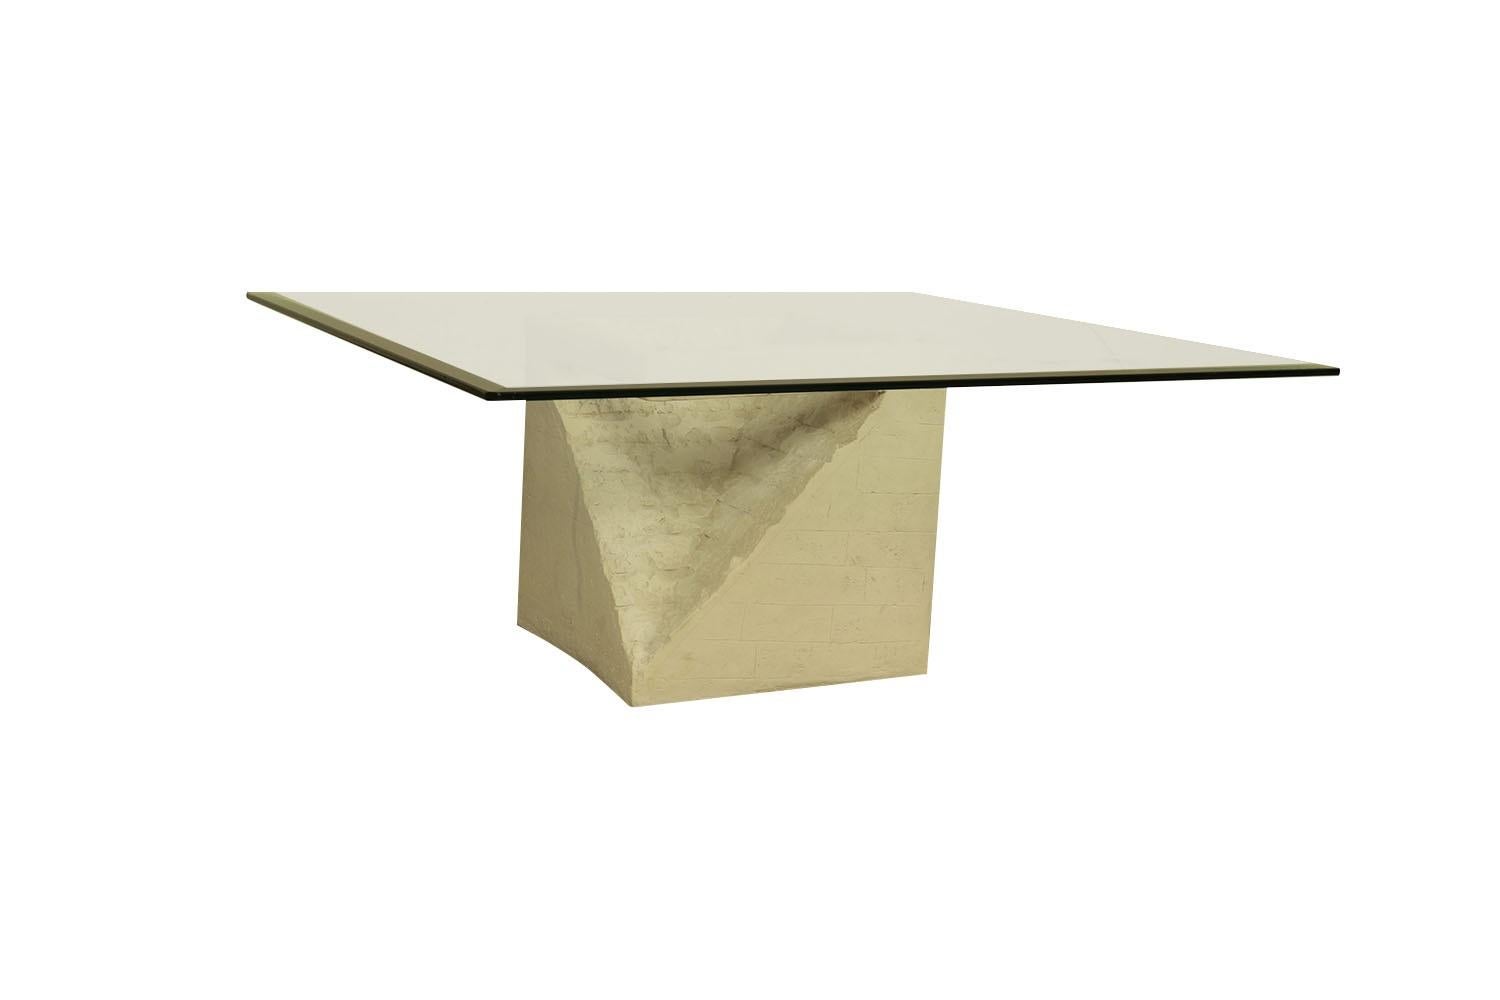 Superbe table basse postmoderne sculptée en pierre de Mactan et verre au design moderniste, élégant et luxuriant, vers les années 1970, composée d'une pierre de Mactan légère, d'un socle en bloc creux qui supporte le verre épais. Cette magnifique